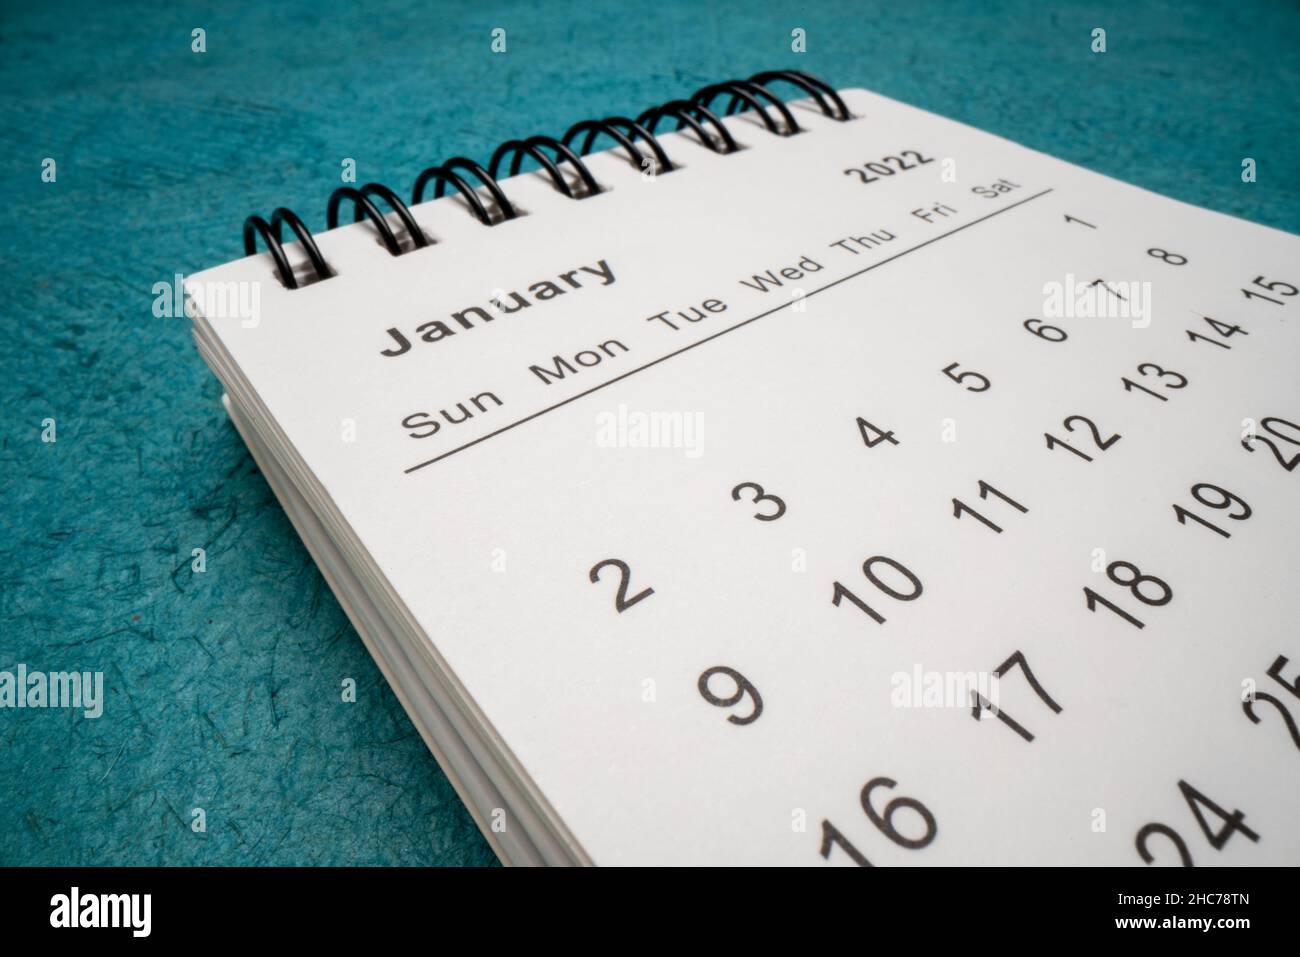 Gennaio 2022 - calendario desktop a spirale contro carta texture blu, Capodanno, concetto di tempo e business, macro shot dal punto di vista dell'obiettivo della sonda Foto Stock